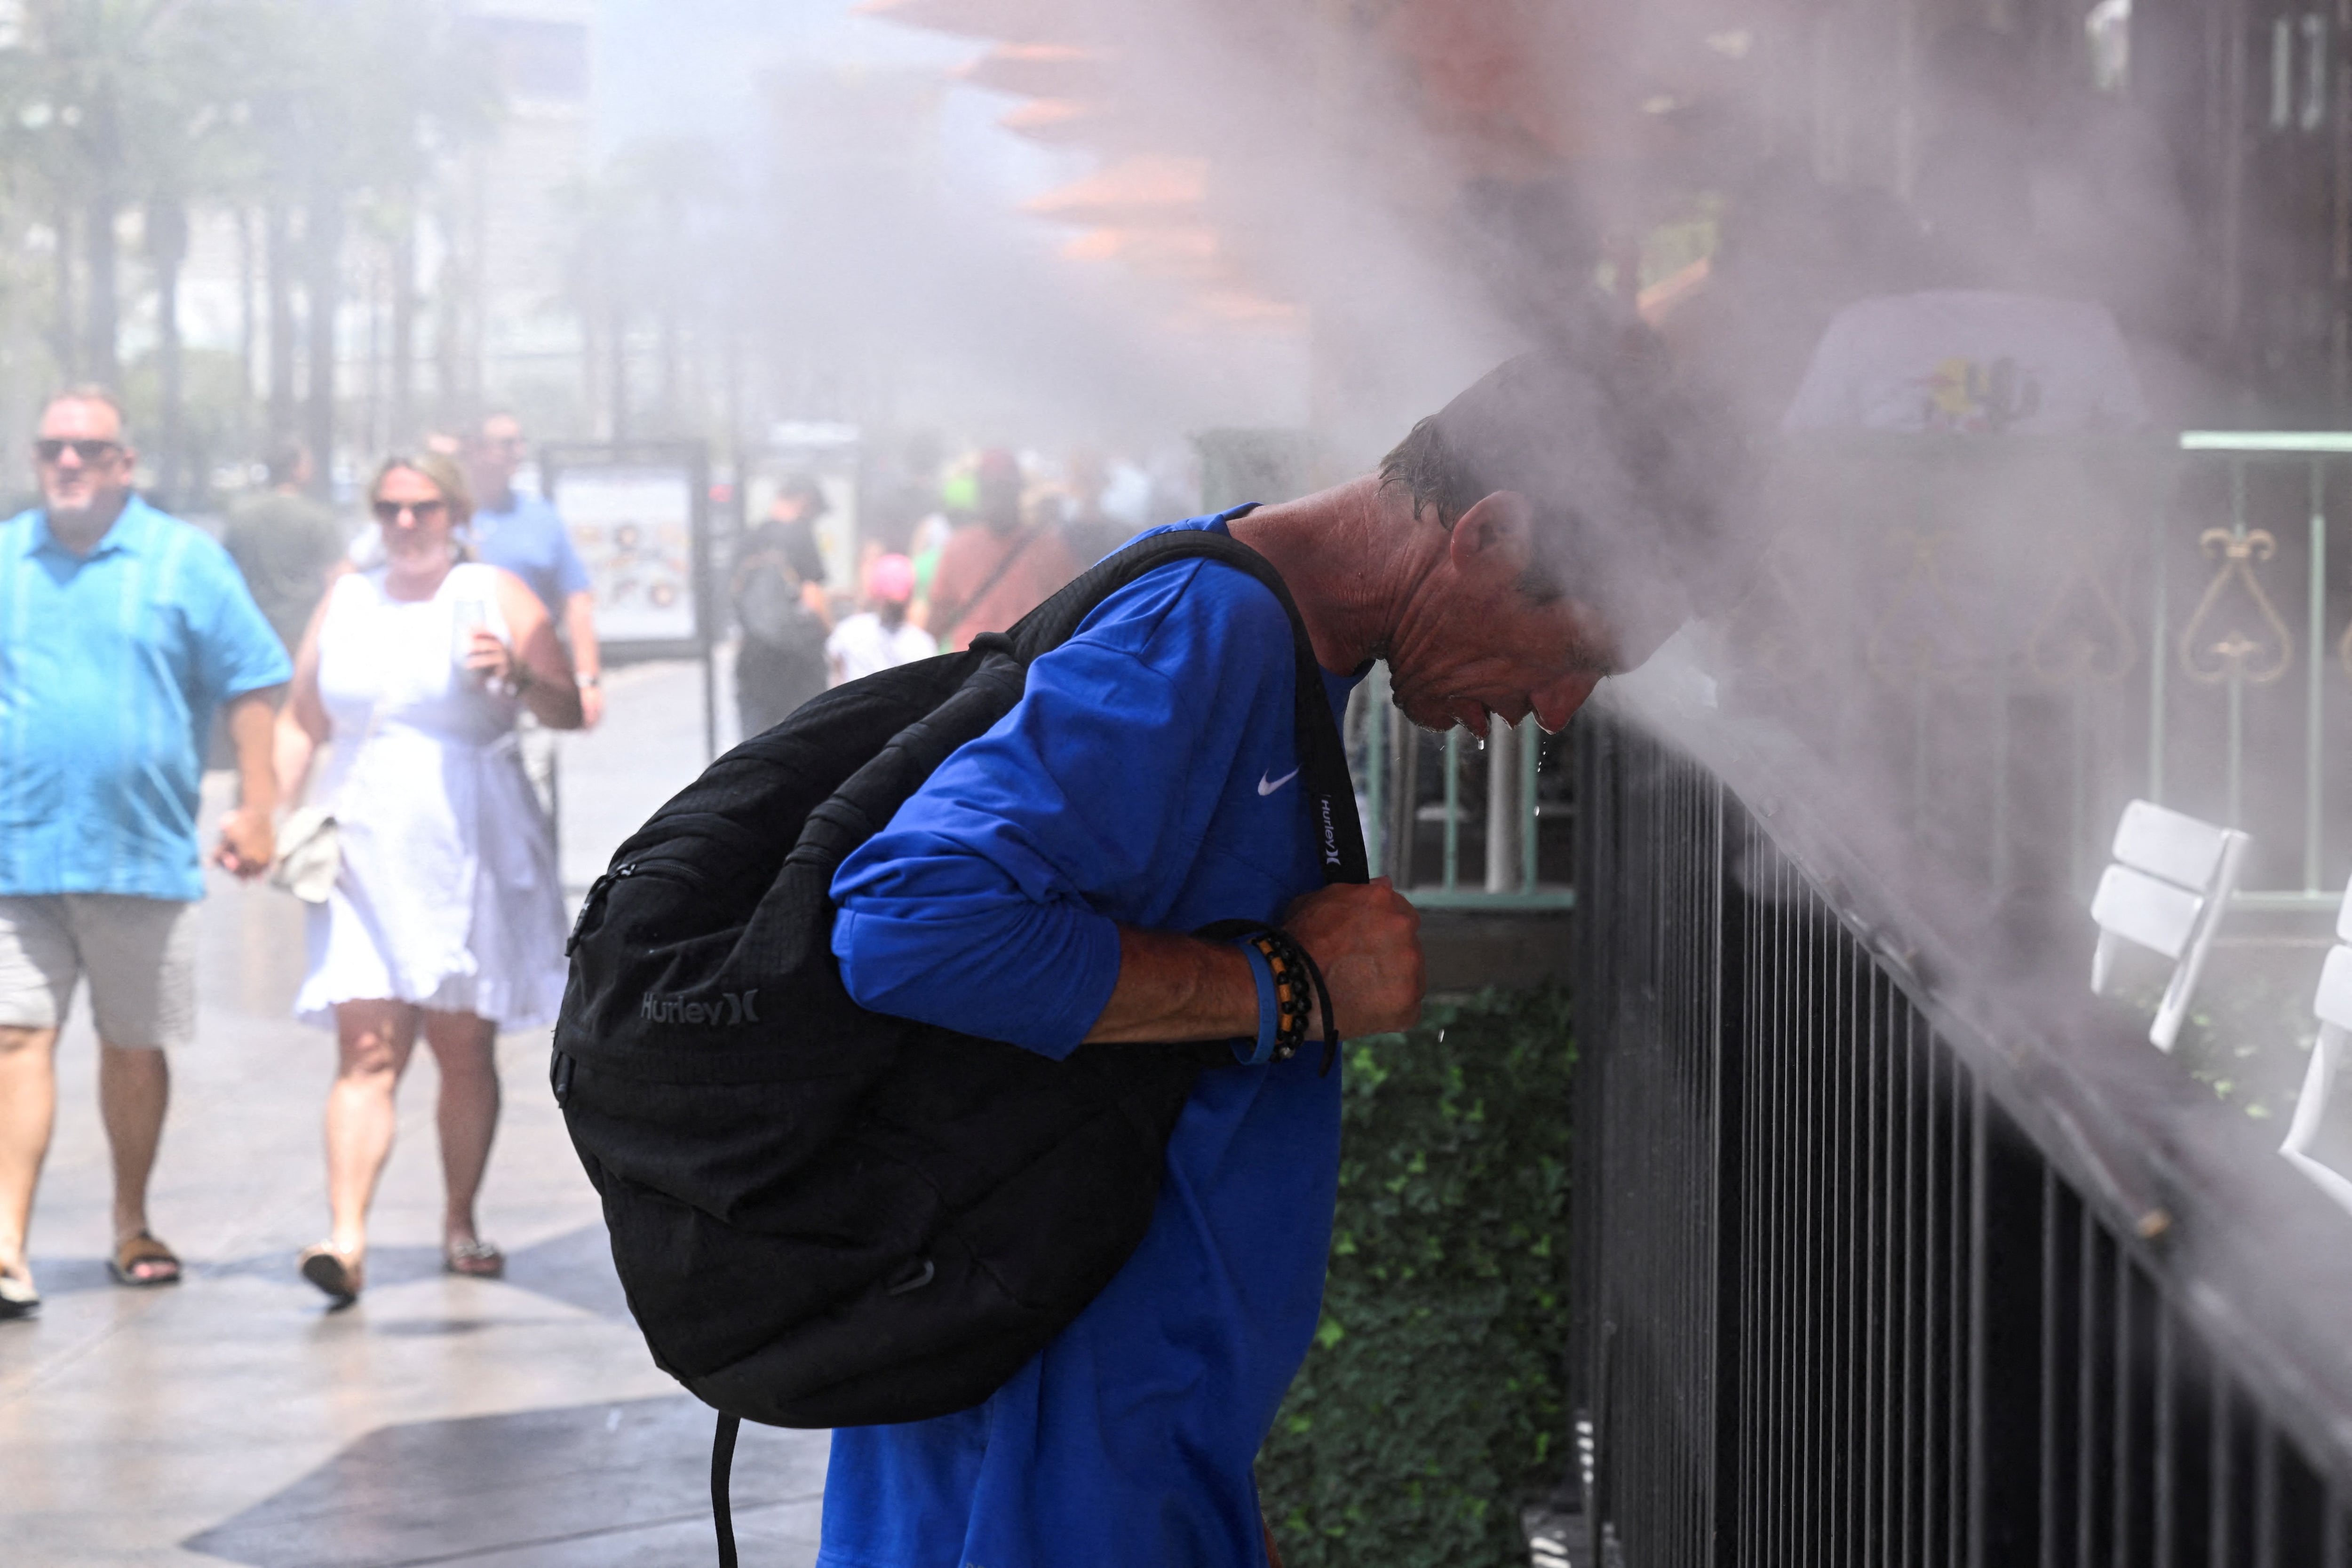 Robert A. coloca su cabeza en los nebulizadores durante un aviso de calor excesivo en Las Vegas, Nevada